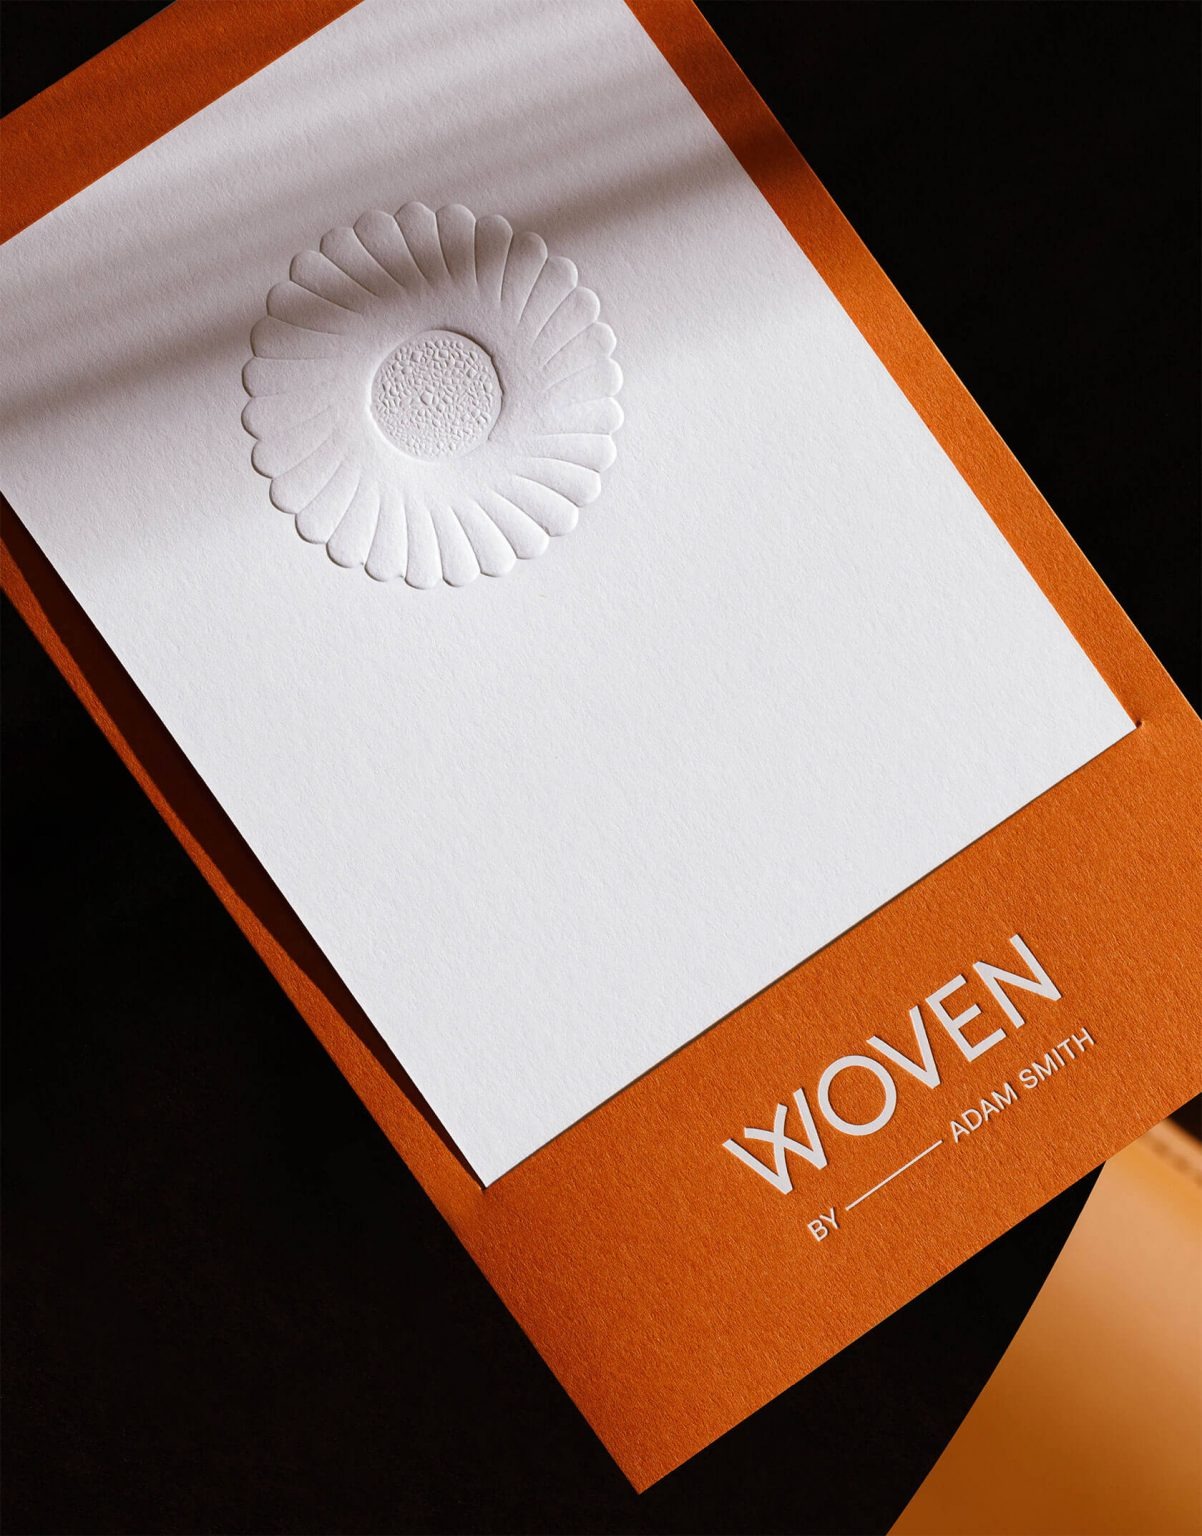 Woven米其林星级餐厅品牌形象设计